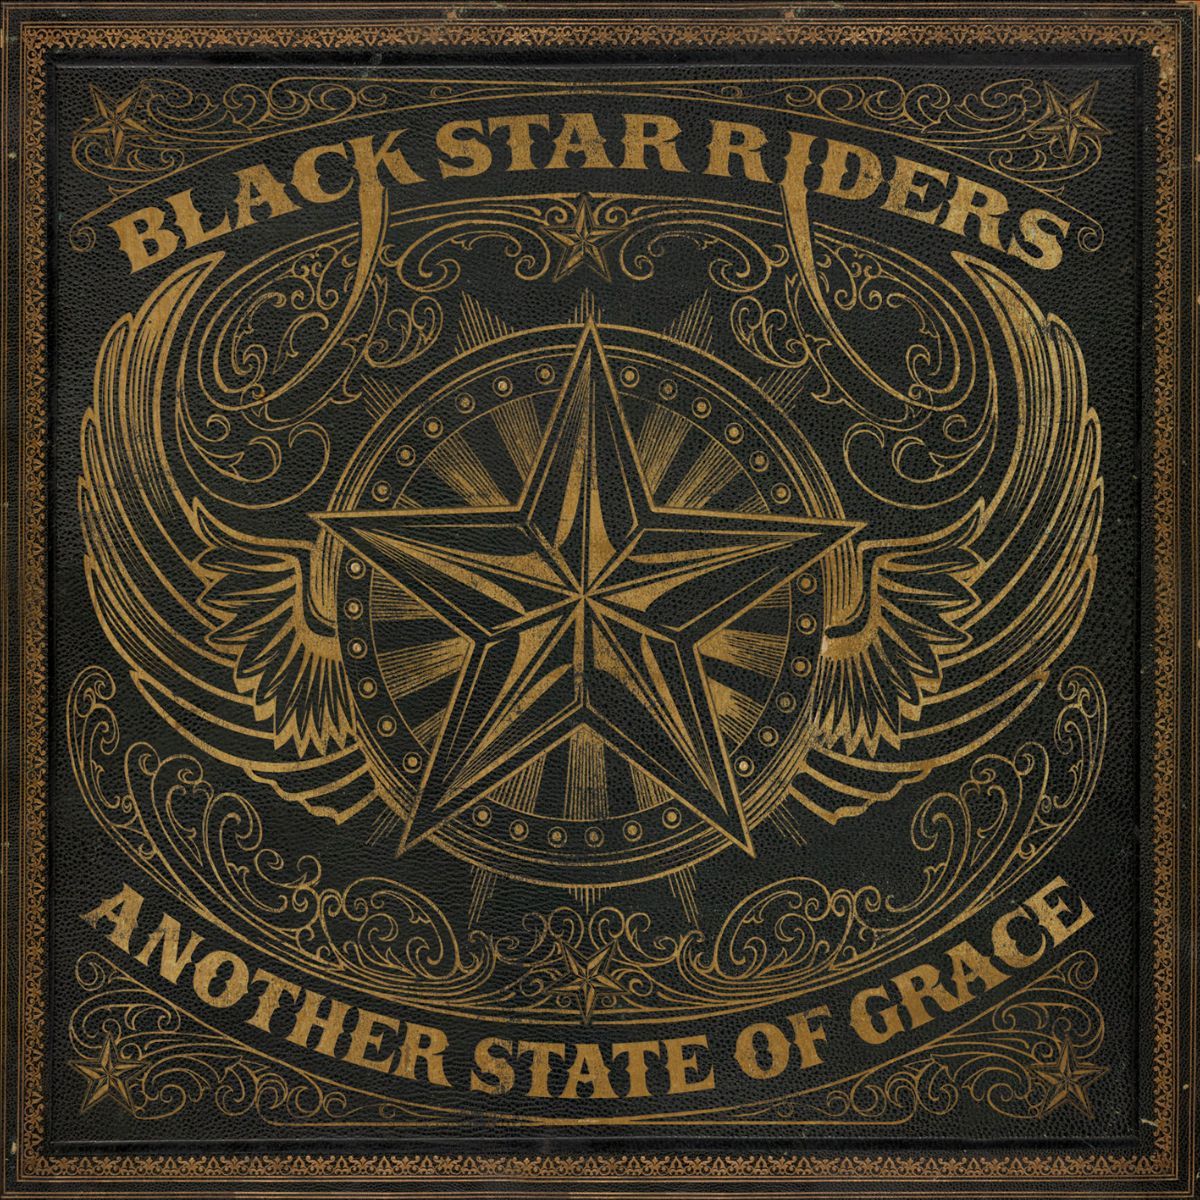 'Another State Of Grace'-Single vom kommenden Album veröffentlicht